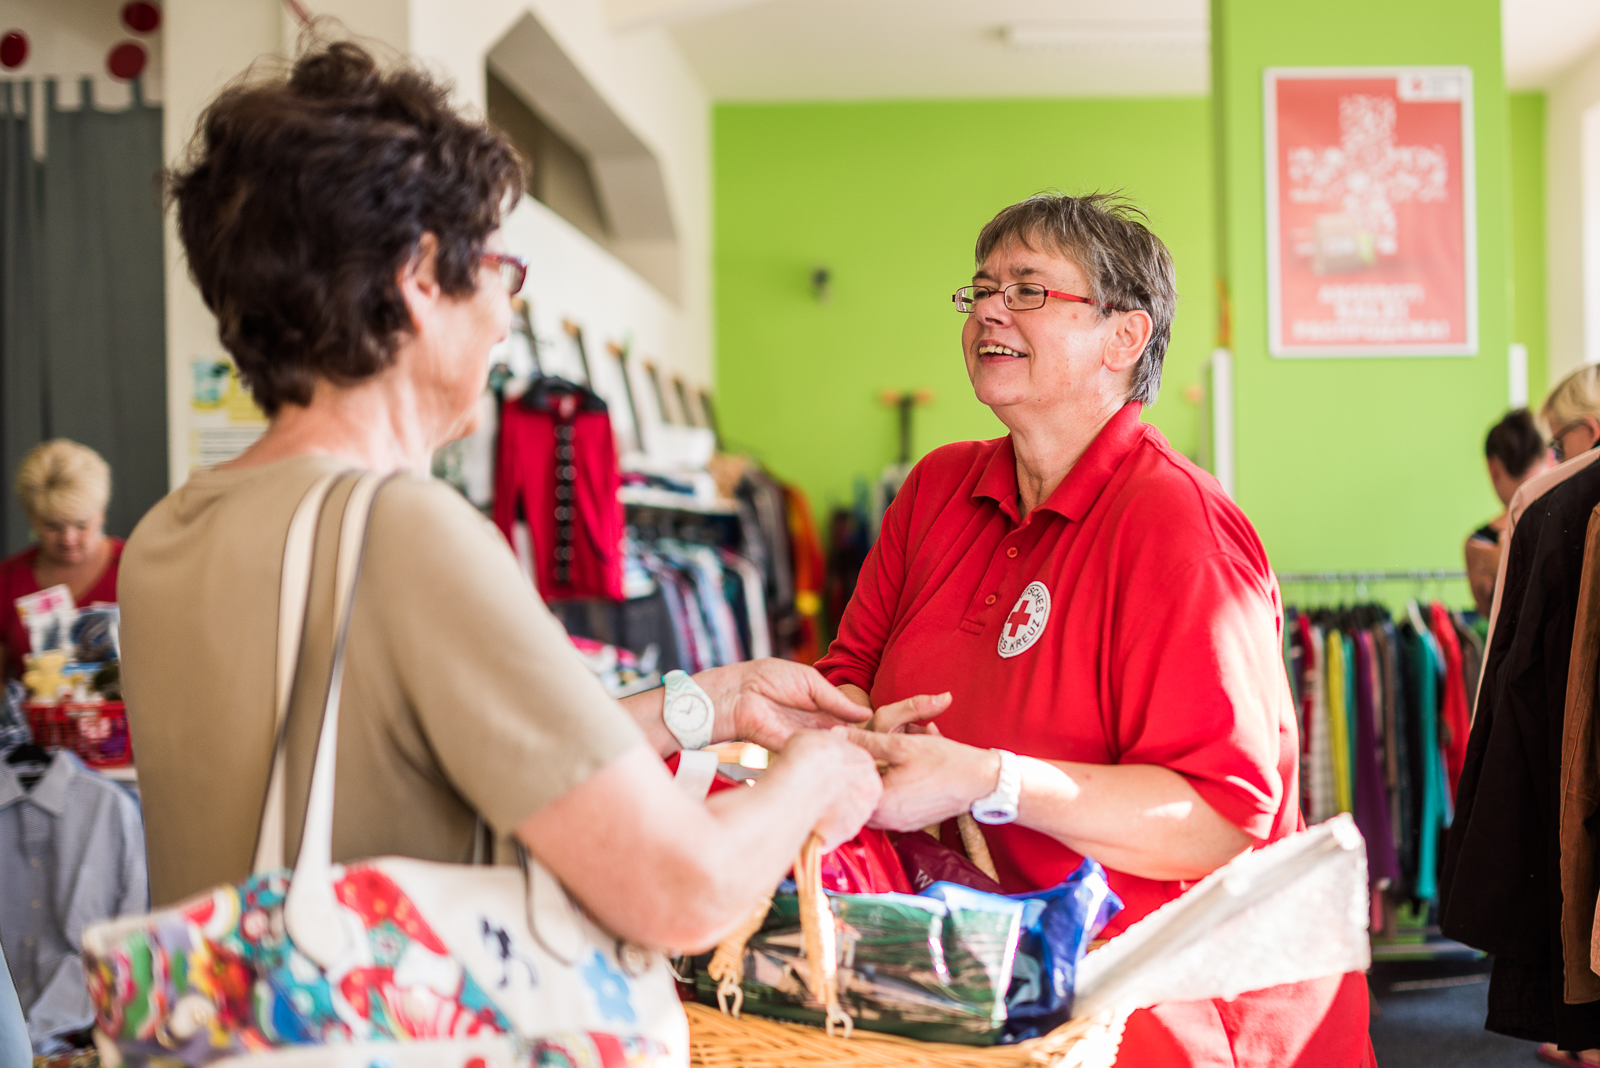 Eine ältere Frau leistet ihren Freiwilligendienst beim Kleiderladen. Sie reicht einer Kundin gerade einen Korb mit ihren gekauften Waren über den Verkaufstresen.